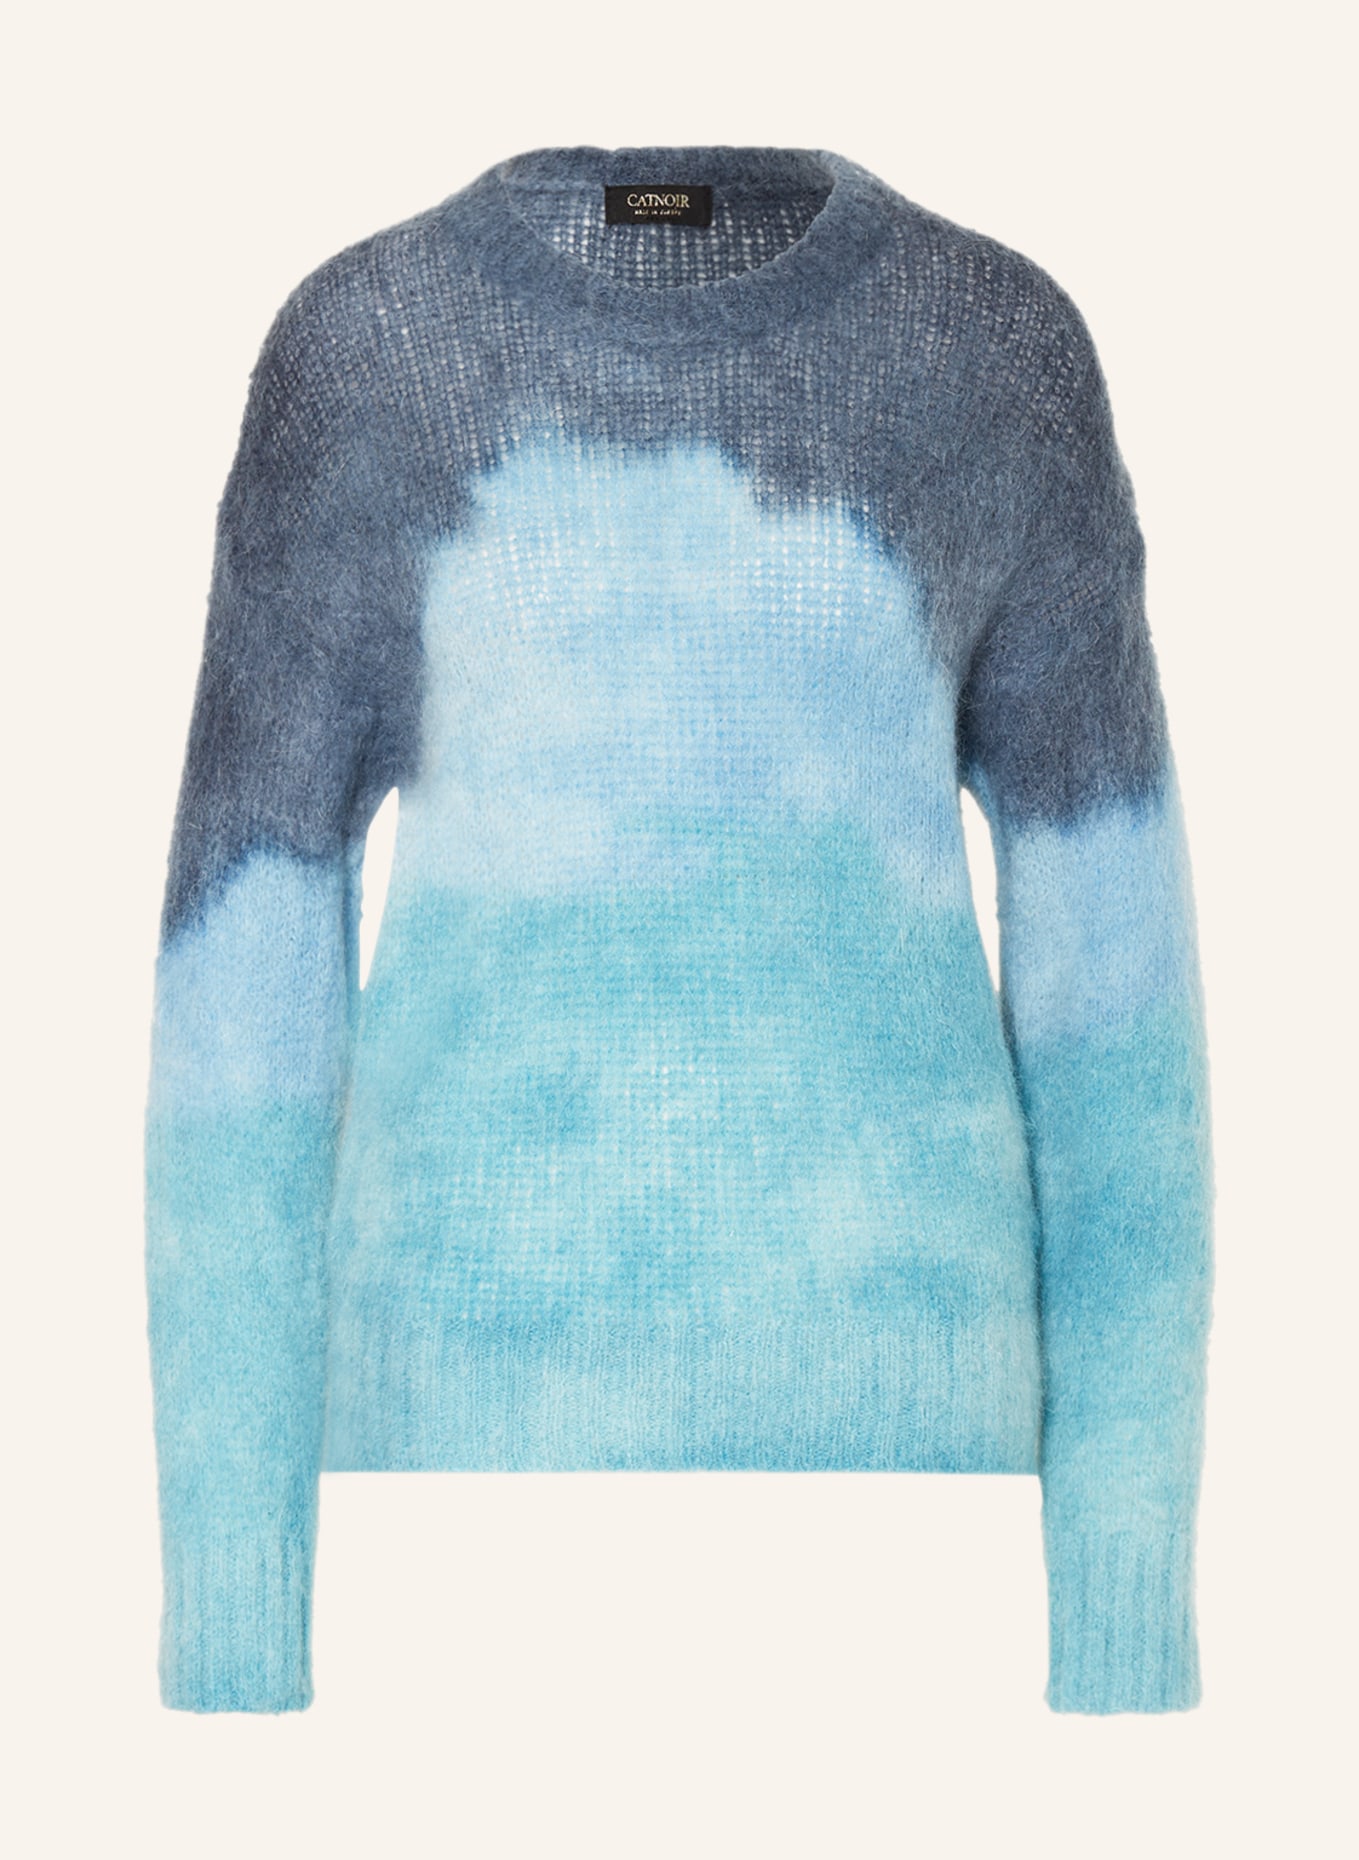 CATNOIR Pullover mit Mohair, Farbe: TÜRKIS/ HELLBLAU (Bild 1)